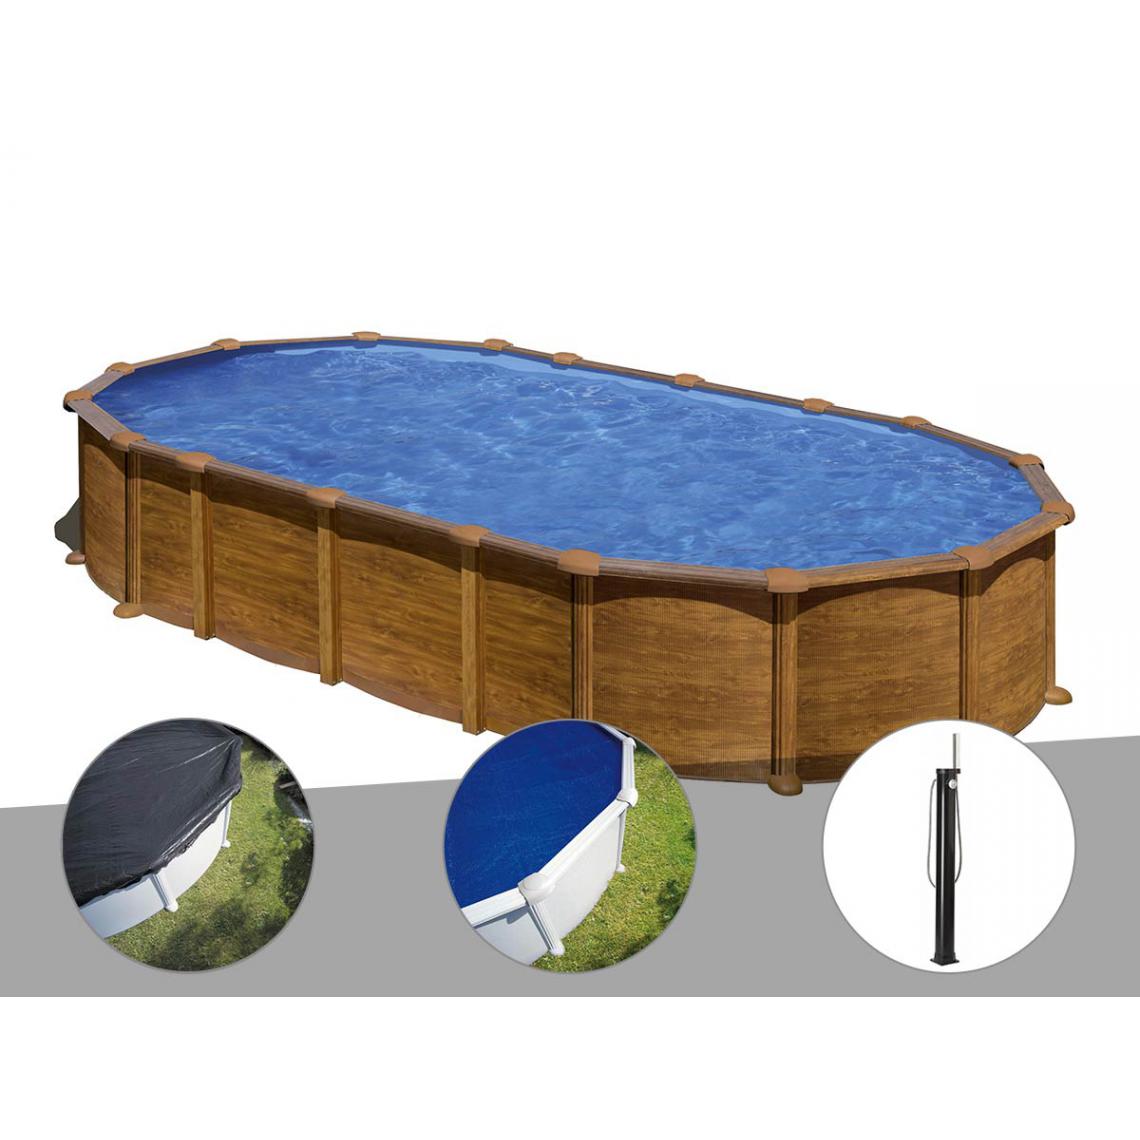 Gre - Kit piscine acier aspect bois Gré Amazonia ovale 7,44 x 3,99 x 1,32 m + Bâche d'hivernage + Bâche à bulles + Douche - Piscines acier et résine